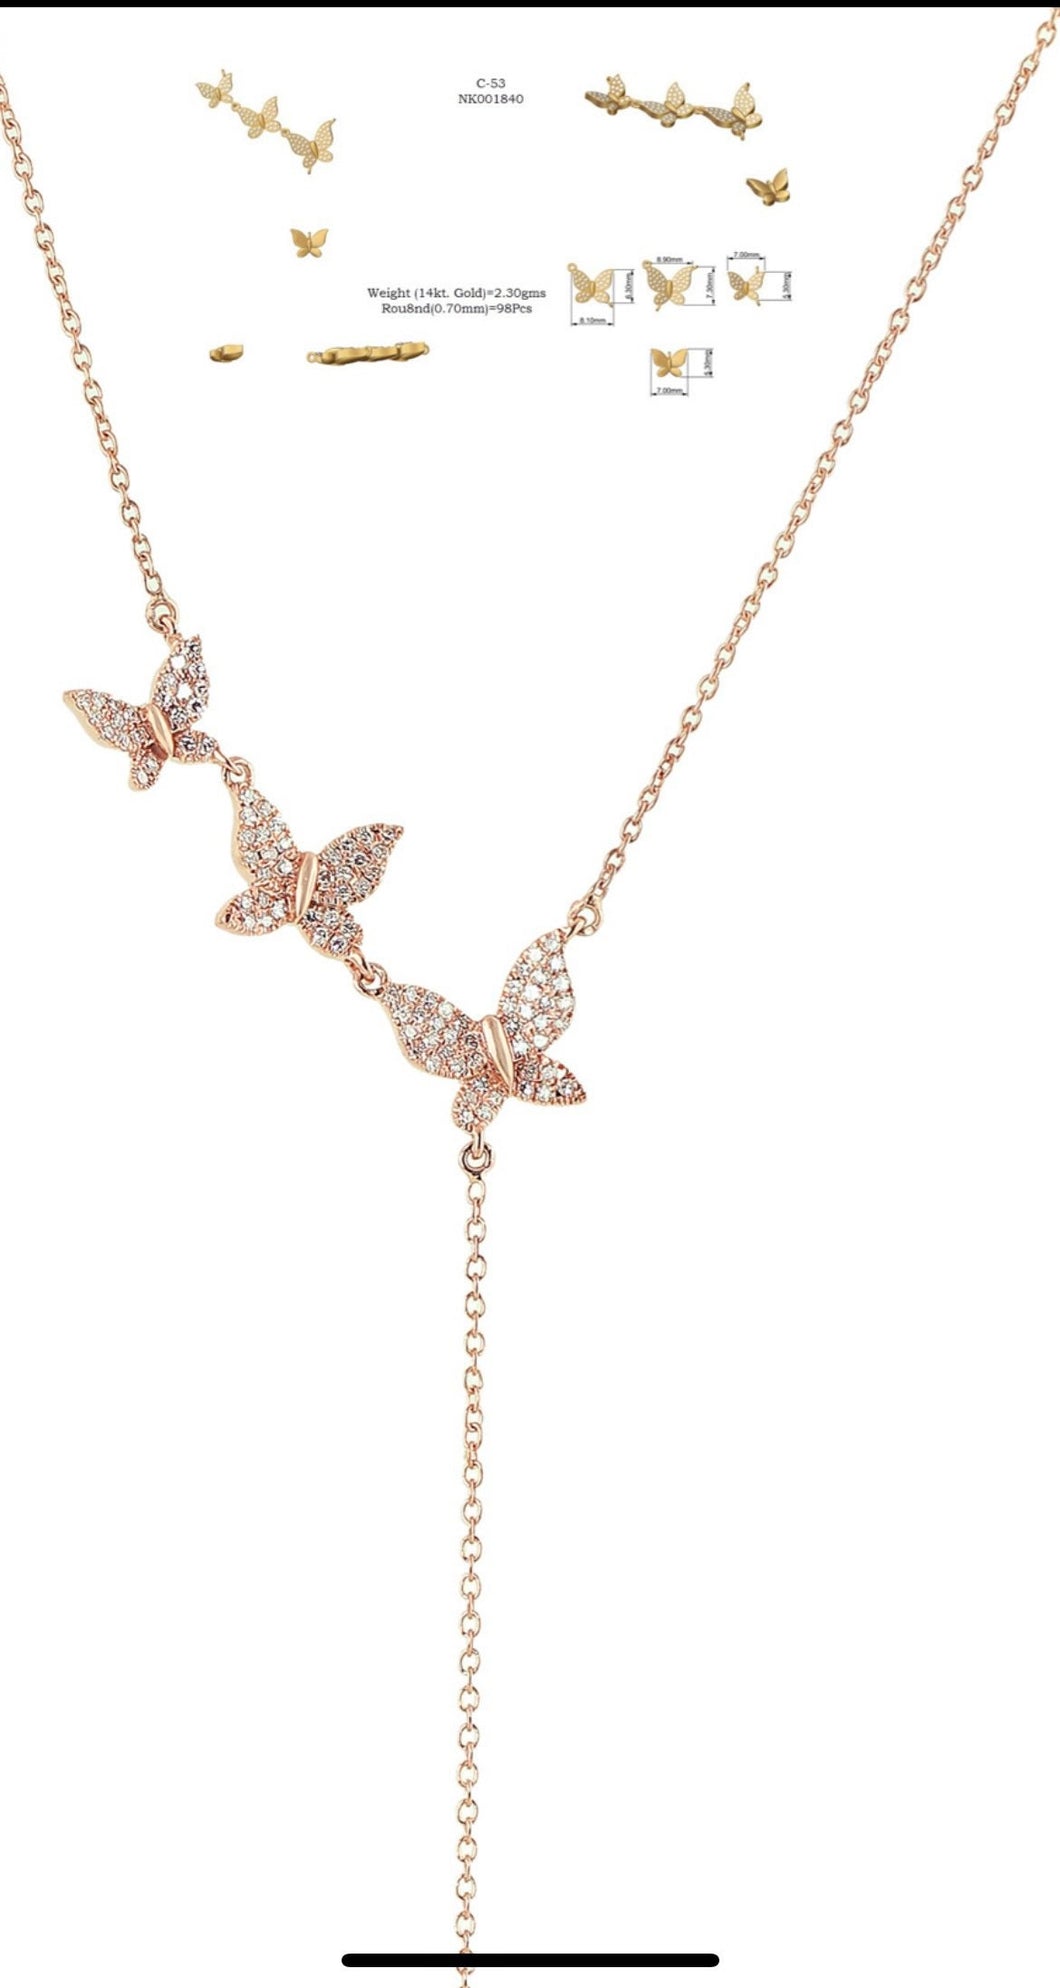 14K Gold necklace,butterfly necklace,14k butterfly necklace,14k gold butterfly necklace, Diamond necklace,14k diamond necklace,gold necklace